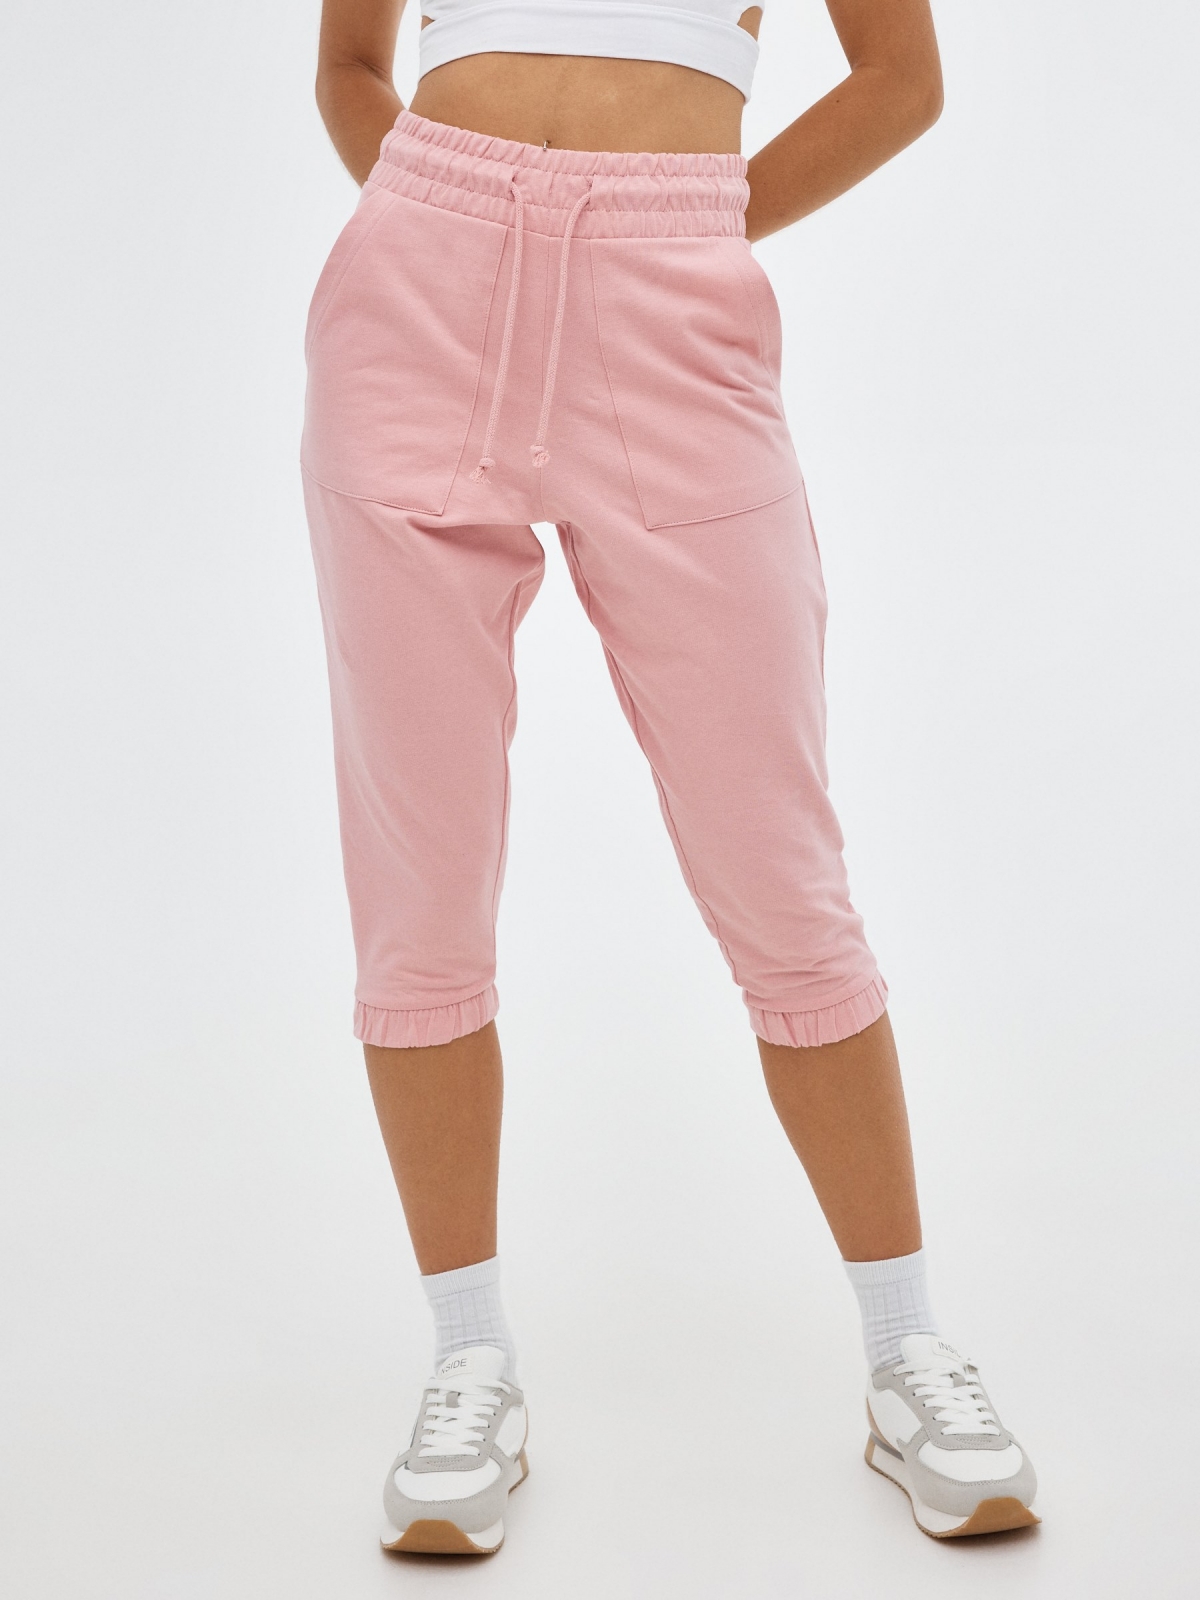 Pantalón jogger de felpa rosa claro vista media trasera